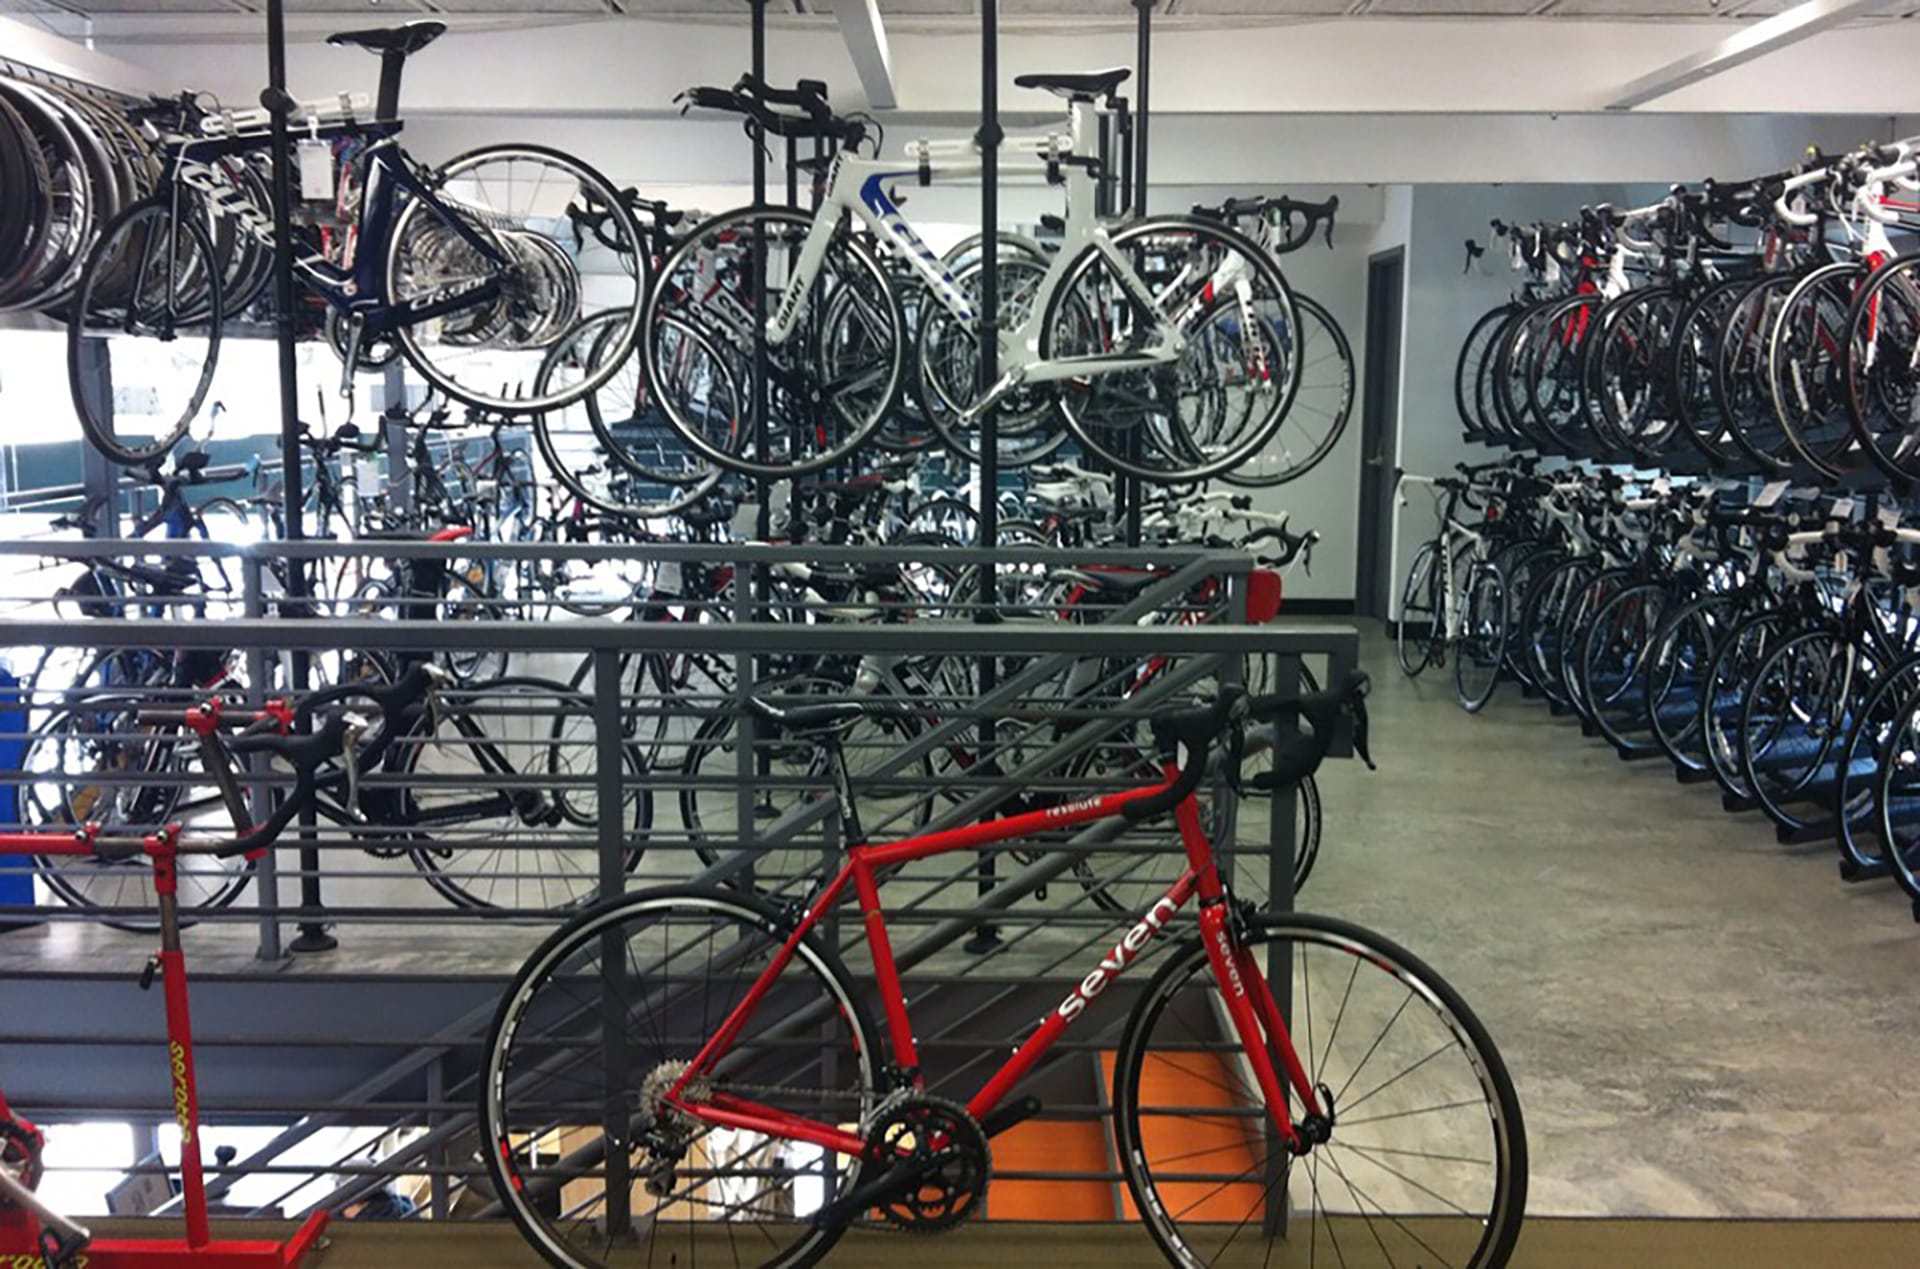 Mezzanine with rows of bike storage.